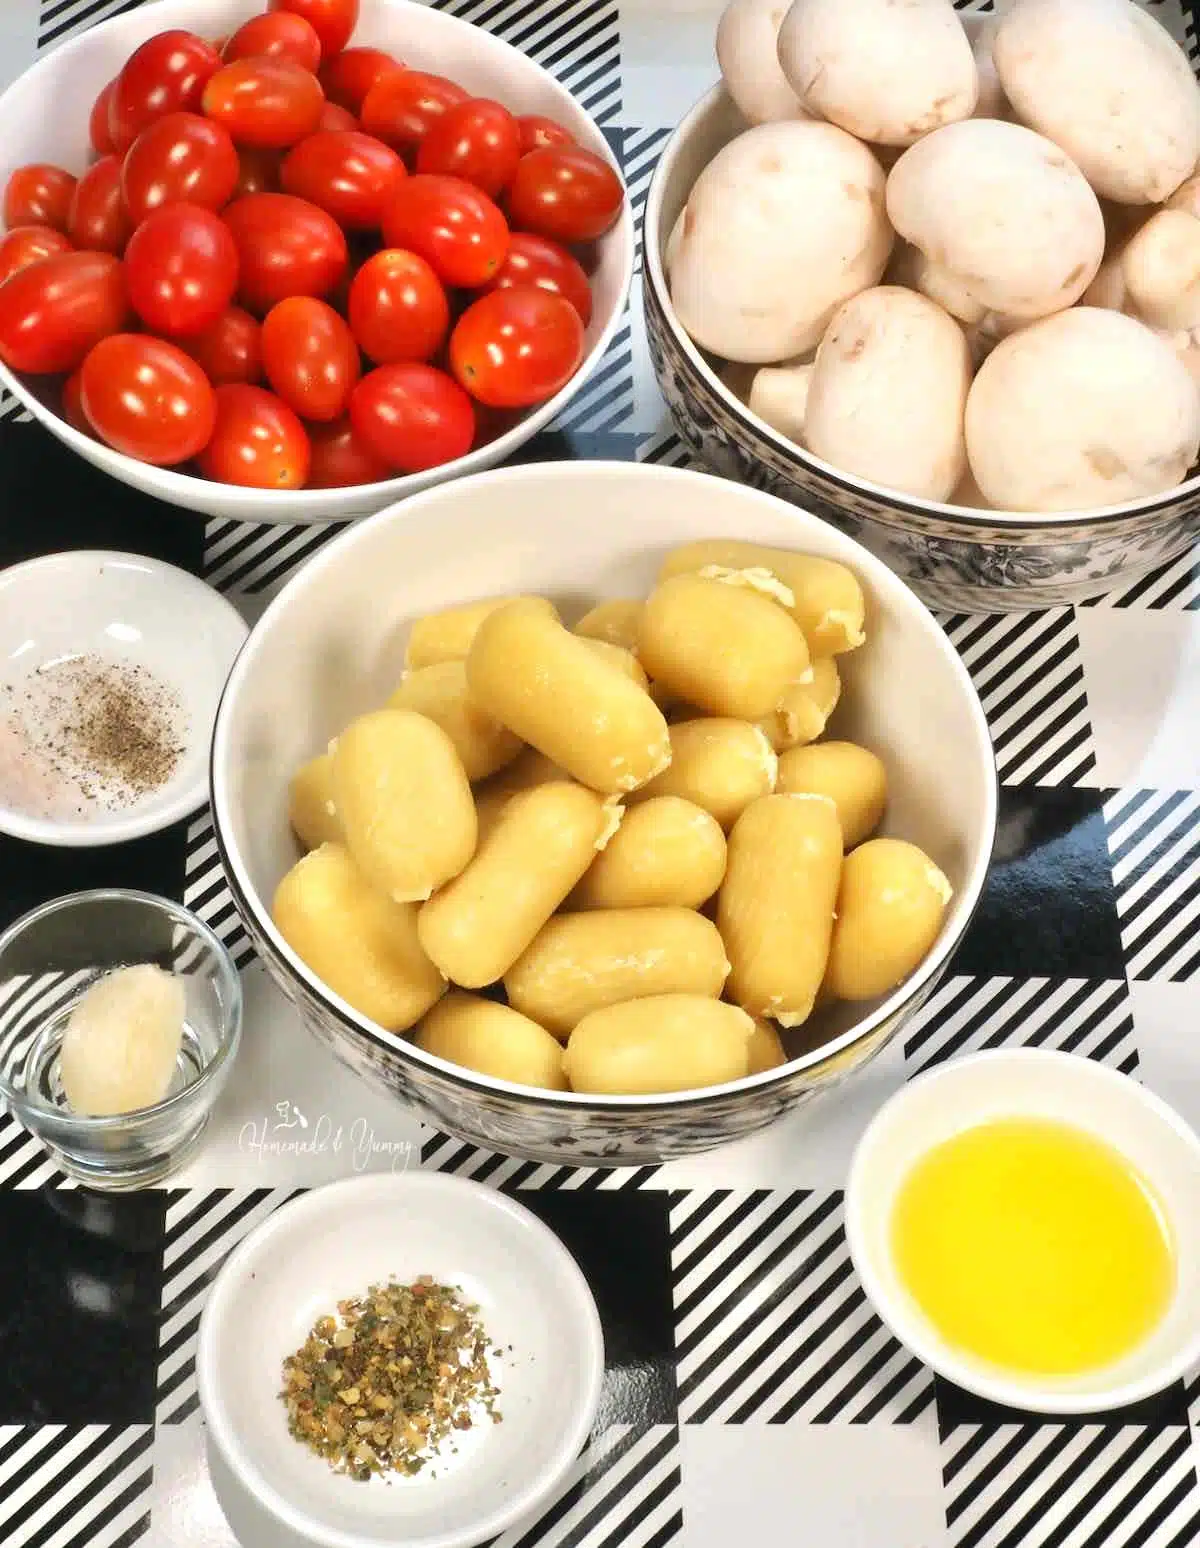 Ingredients for sheet pan baked gnocchi.